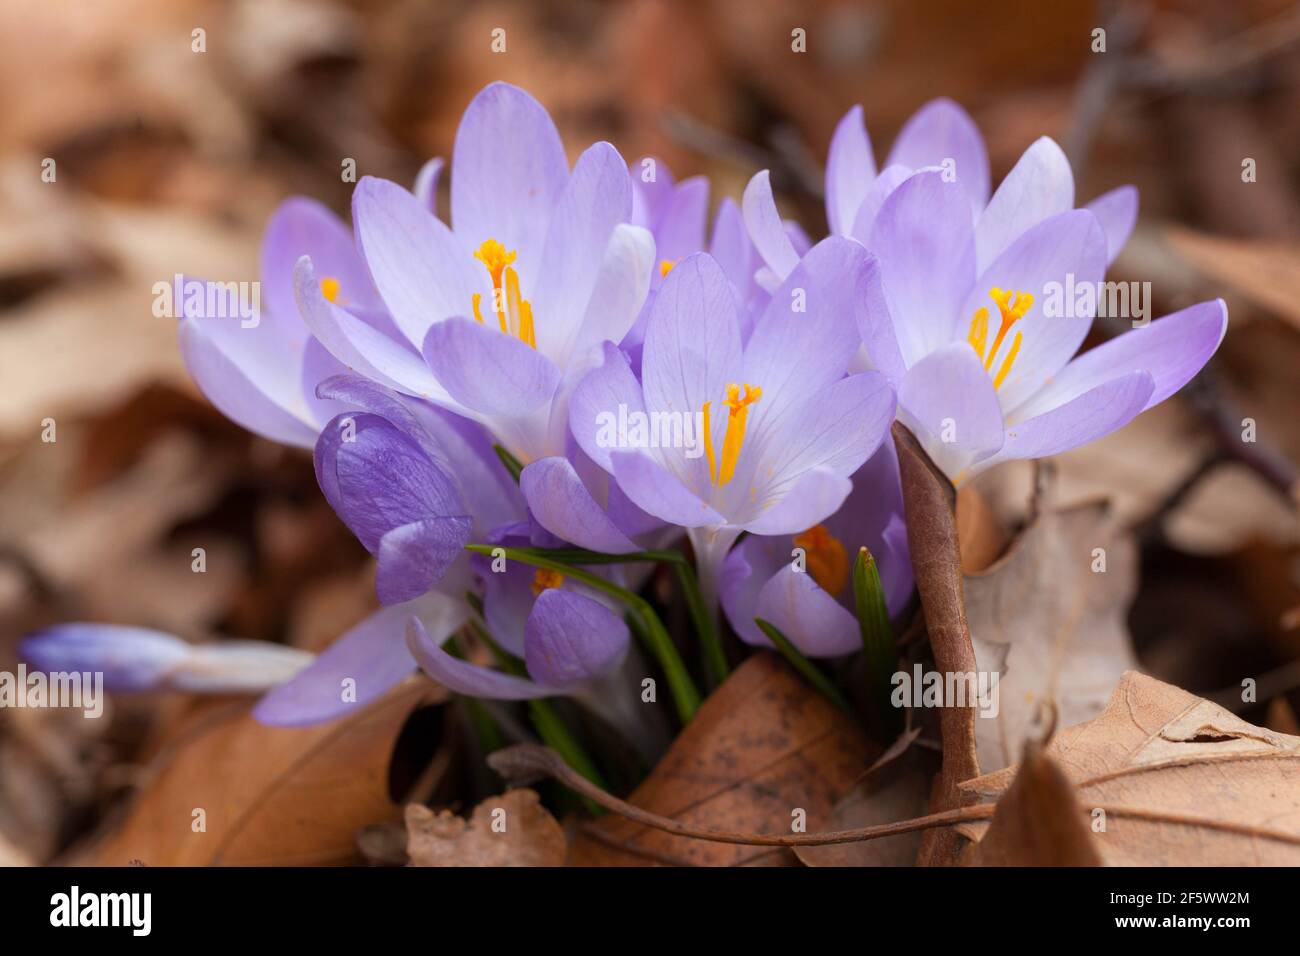 Frühlingskrokusse erste Frühlingsblumen wachsen auf und lassen Krokusklumpen blühen im März Frühjahrsblumen blassblaue Krokusblüten blühen Stockfoto